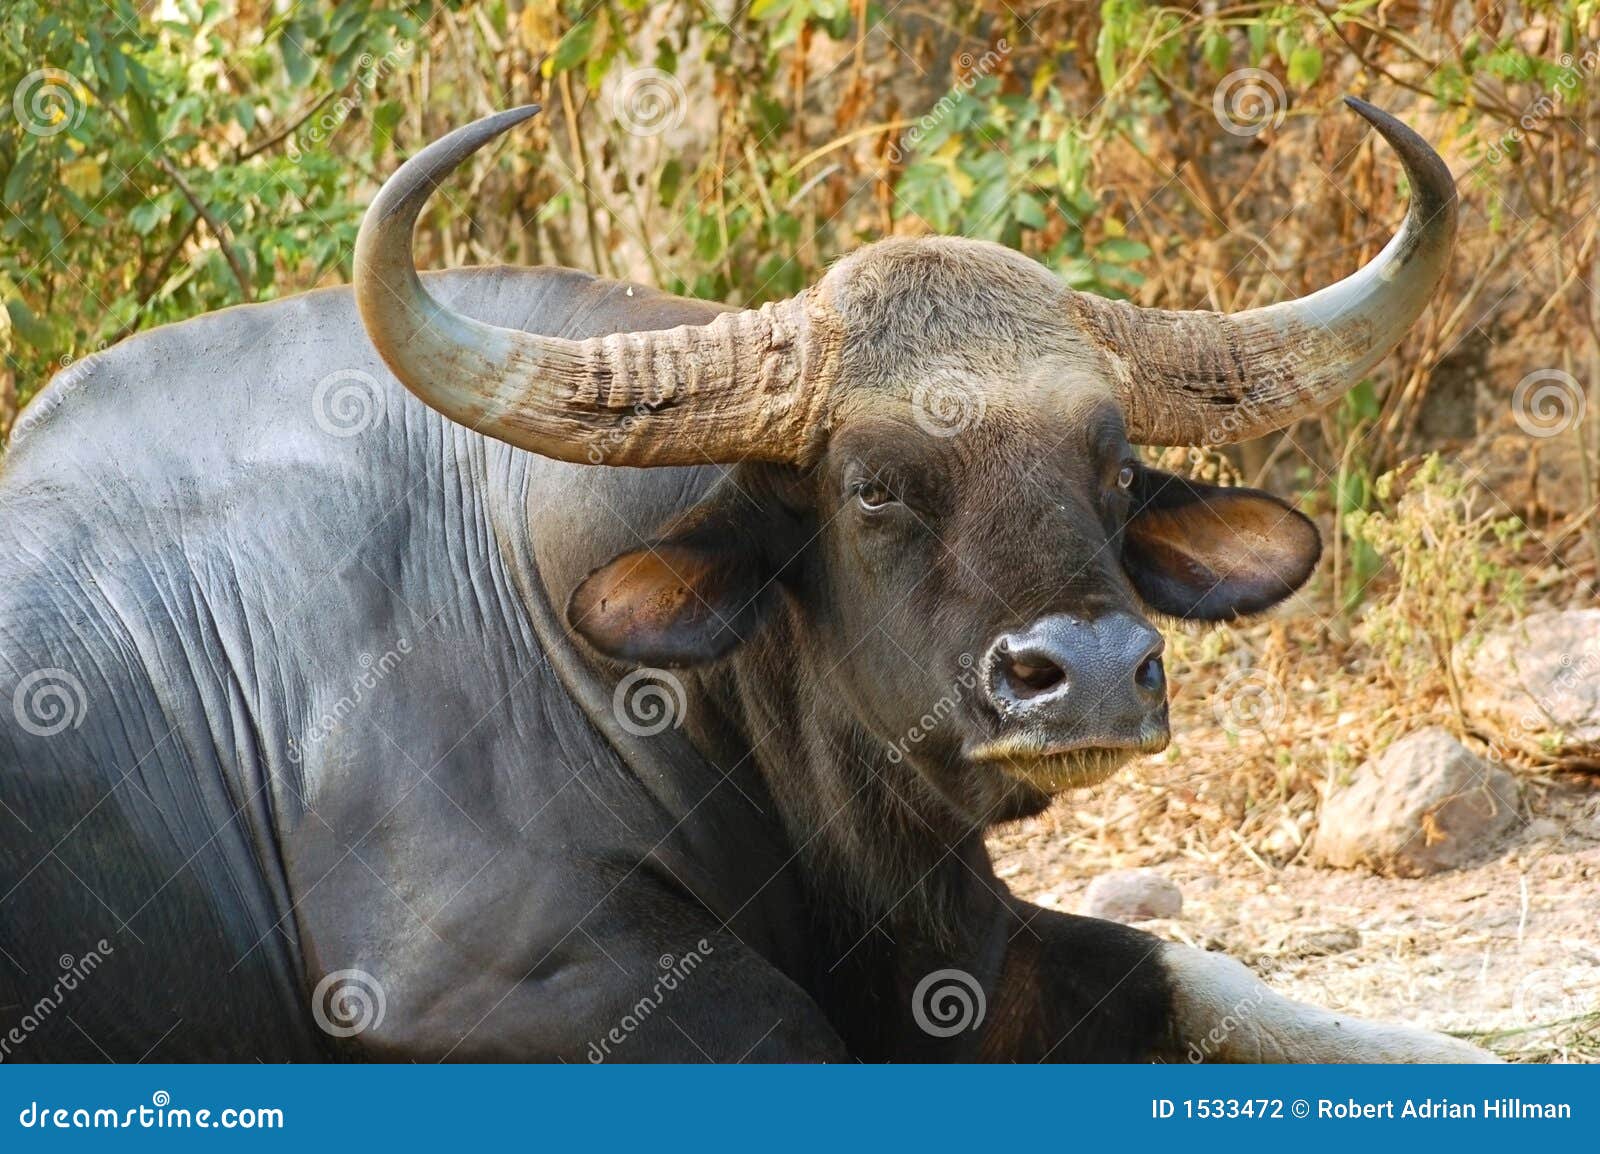 bull gaur